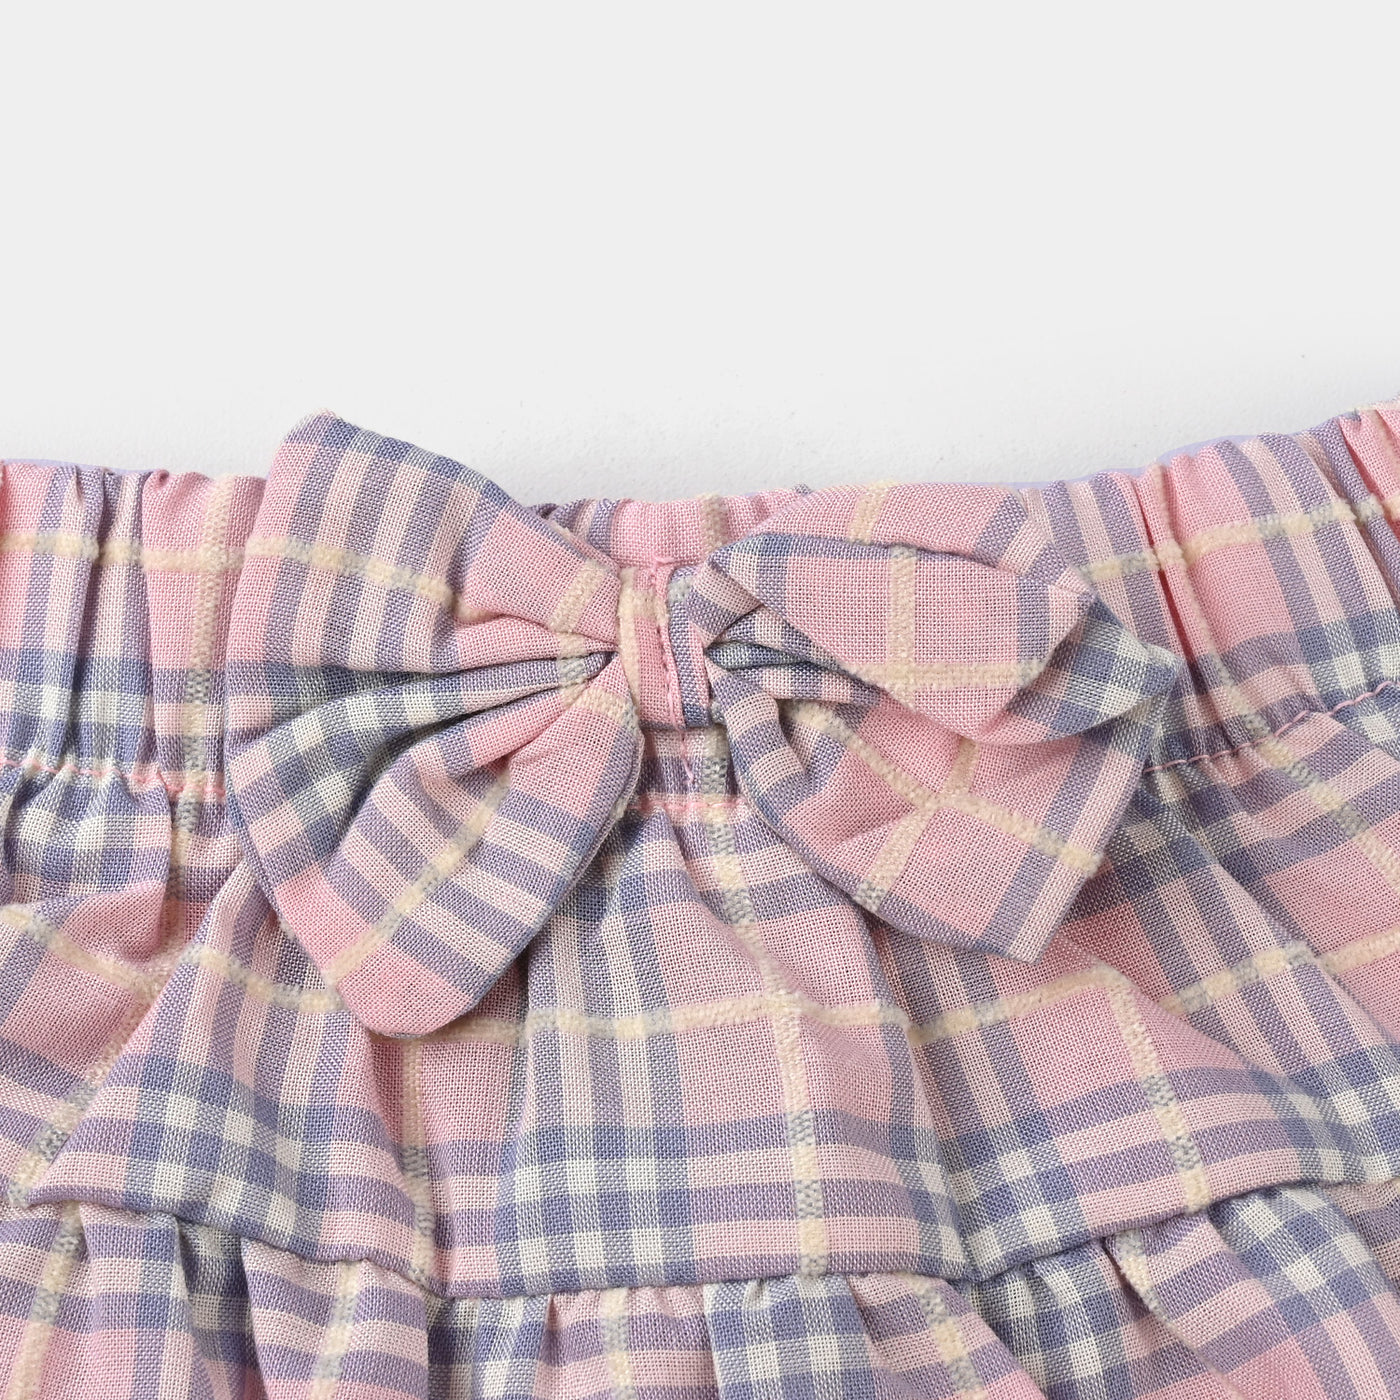 Infant Girls Cotton Interlock 2PC Suit